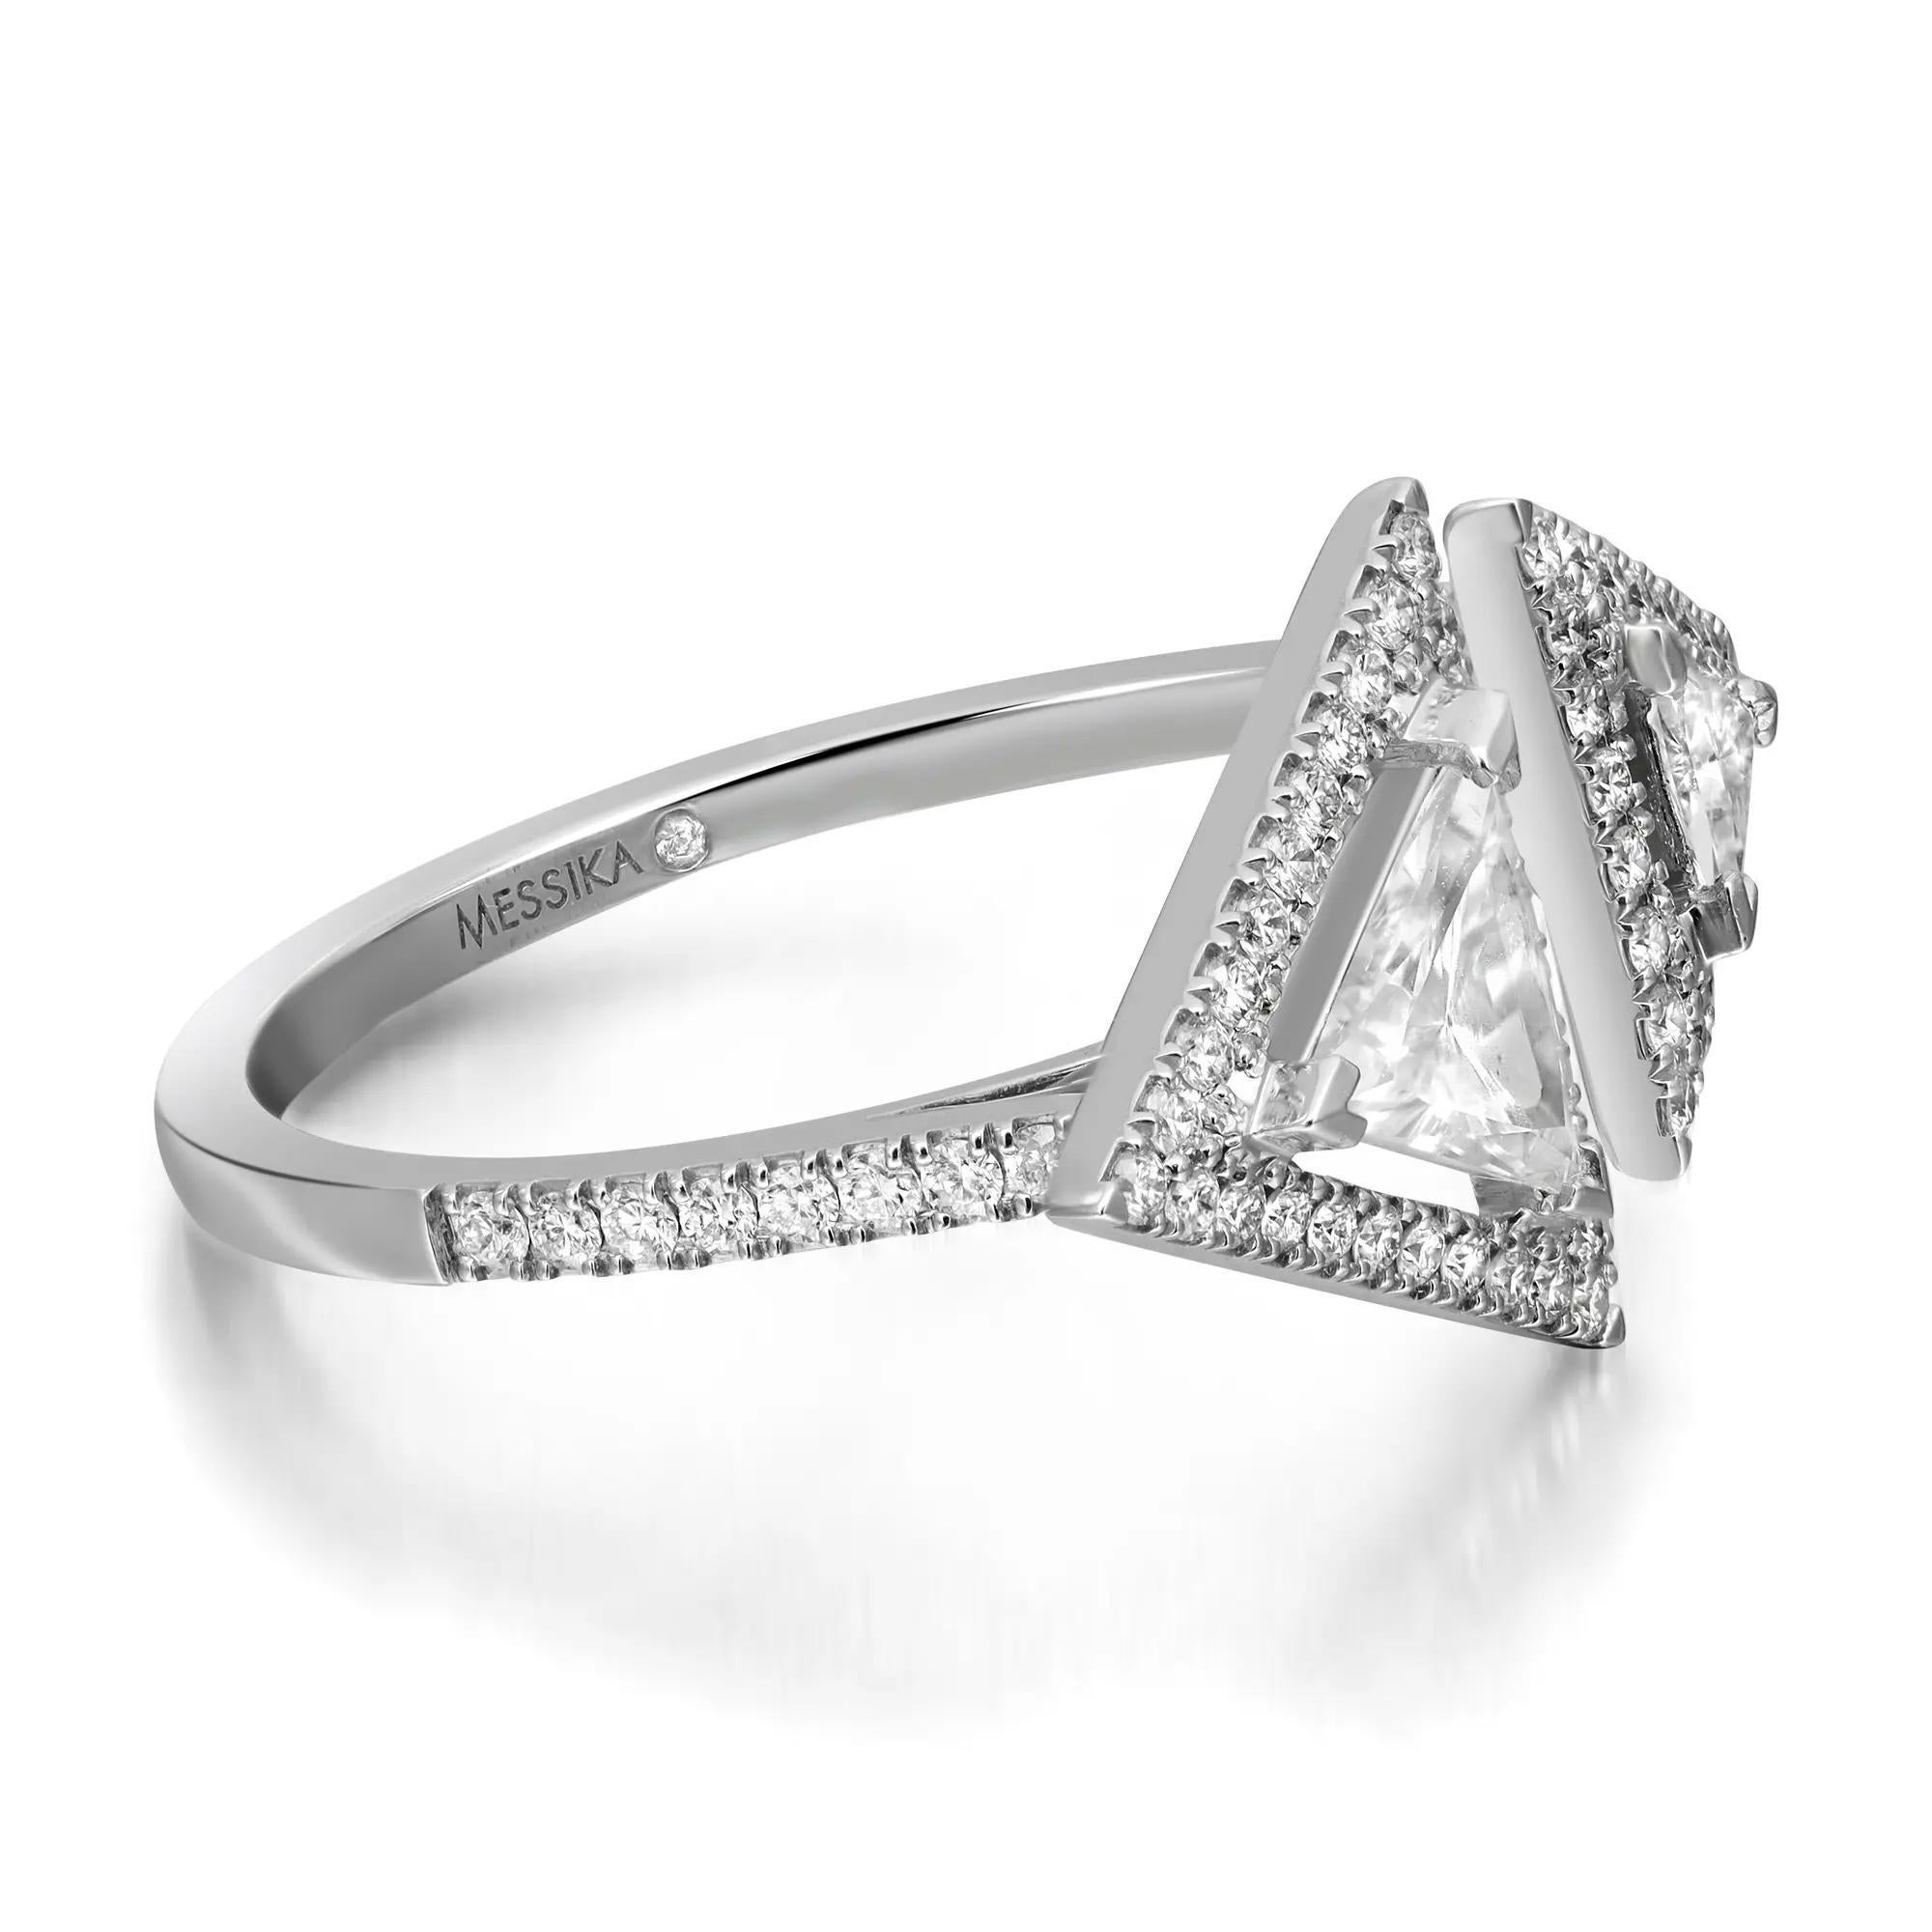 Cette magnifique bague en diamant Messika Thea Toi & Moi, unique en son genre, est réalisée en or blanc 18 carats. Orné de deux diamants triangulaires avec un halo de diamants ronds de taille brillant en serti pave. Poids total des diamants : 0,65